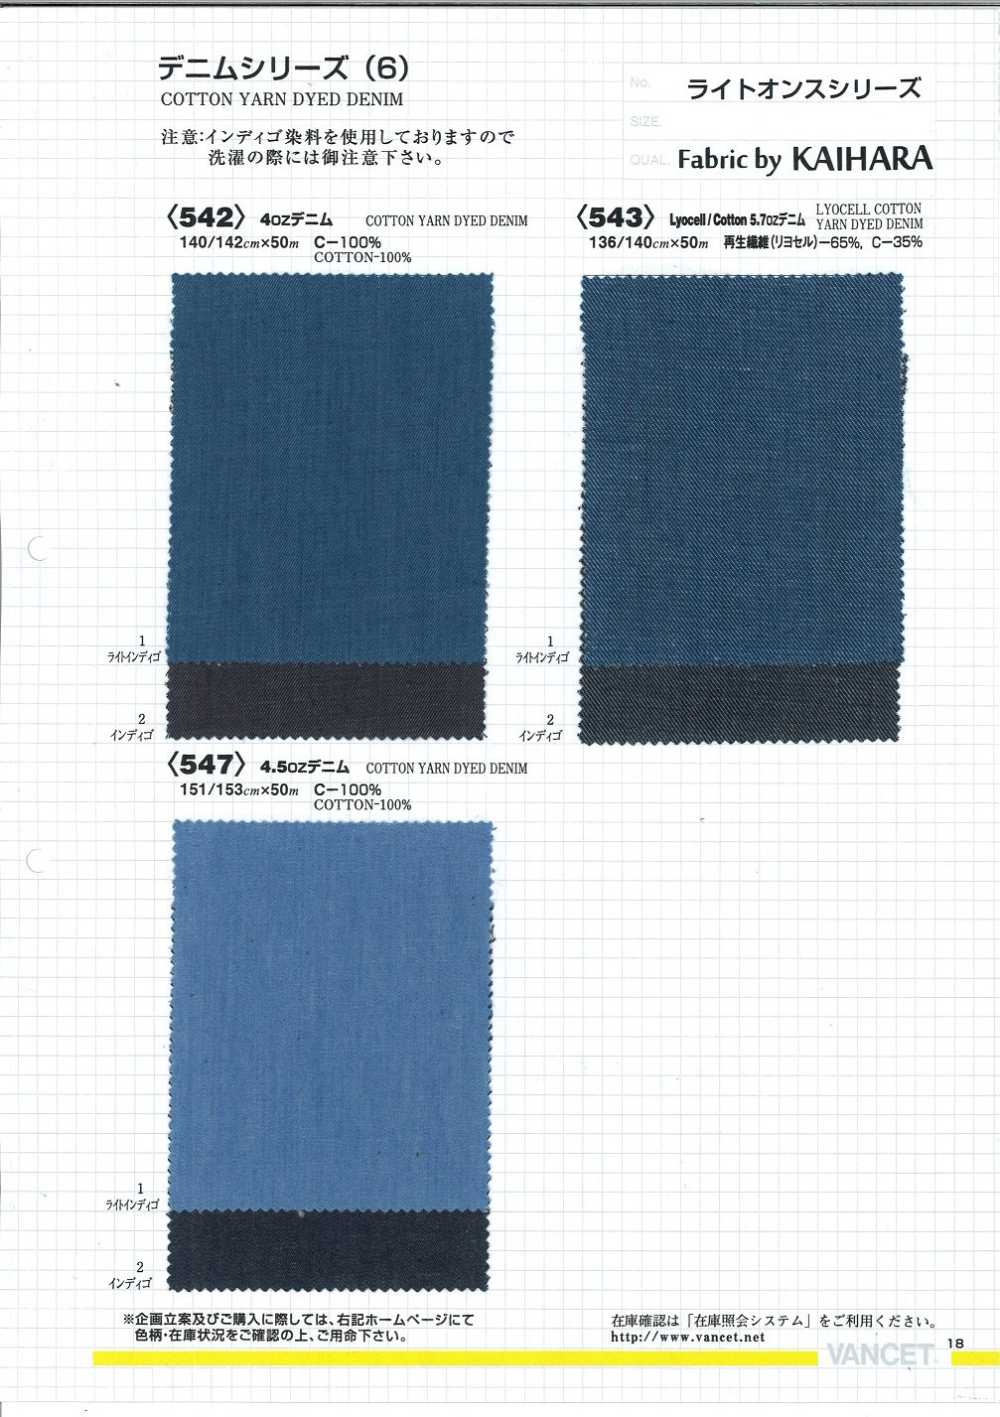 543 Lyocell / Cotton 5.7 OZ Denim[Textile / Fabric] VANCET